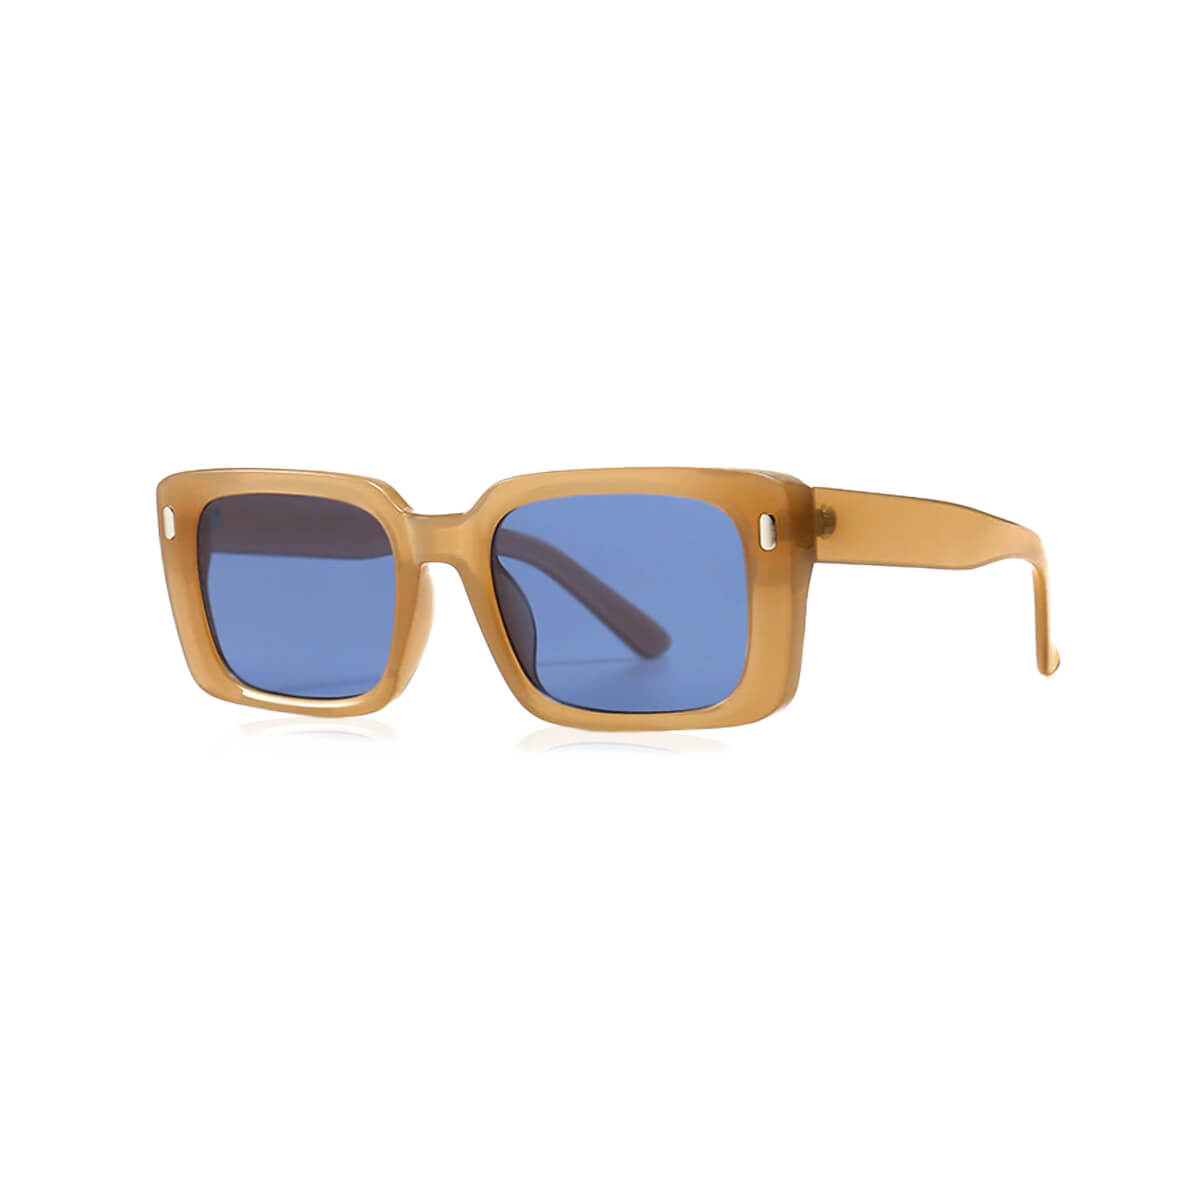 Frye Asher Blue Light Glasses Square Sunglasses